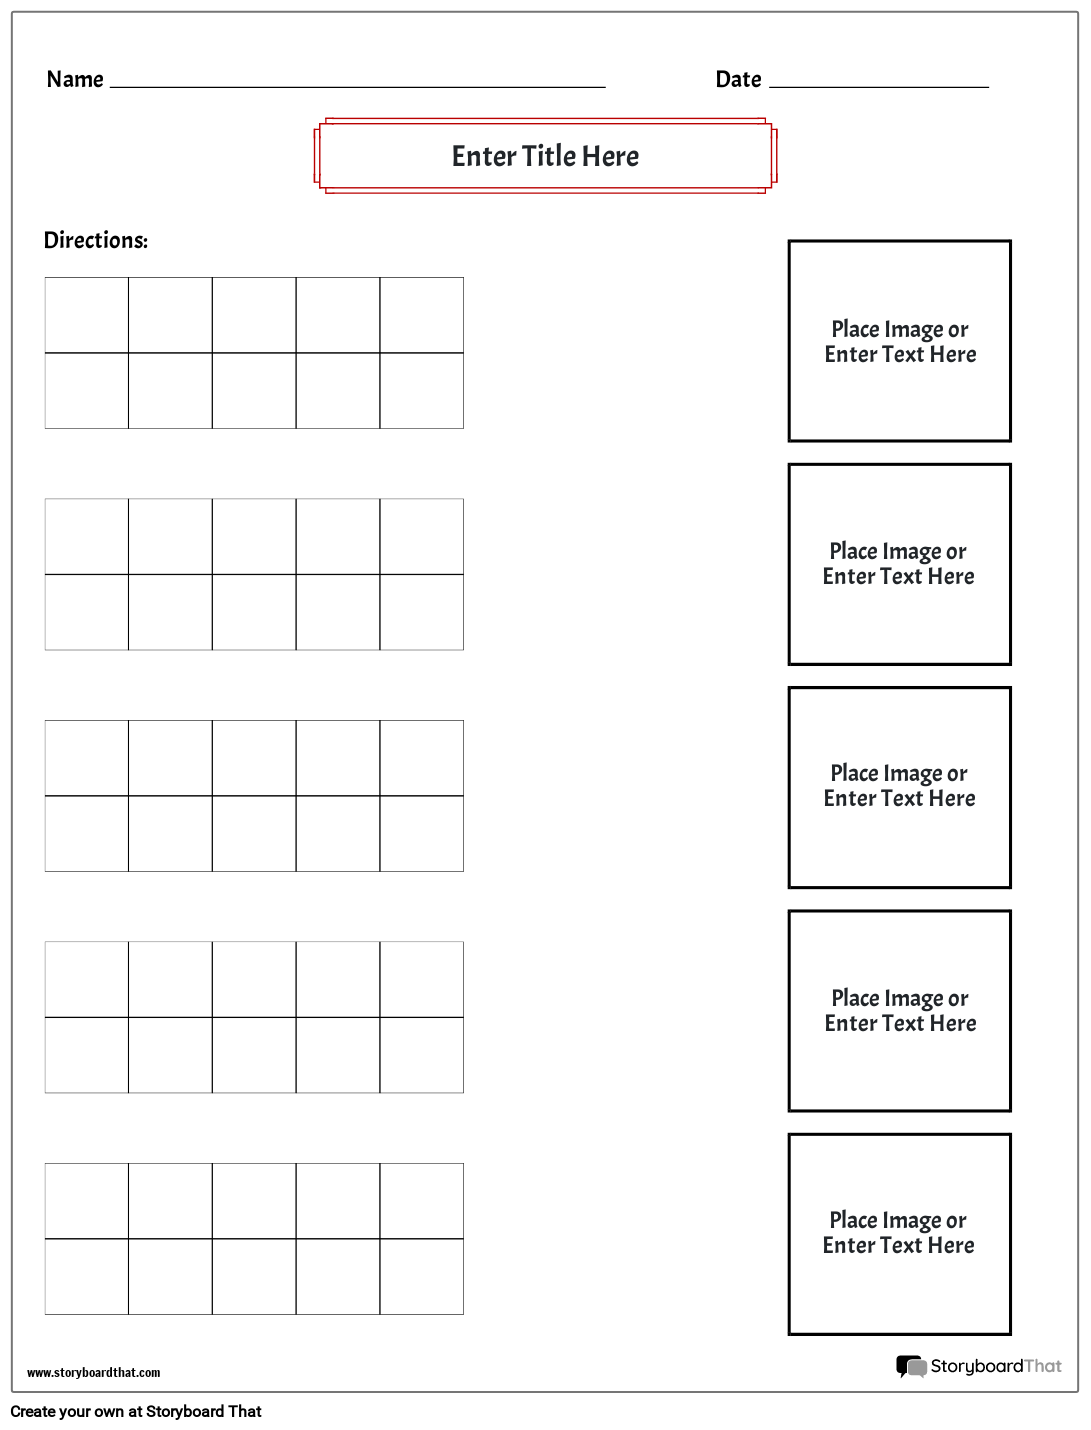 matching-7-storyboard-worksheet-templates